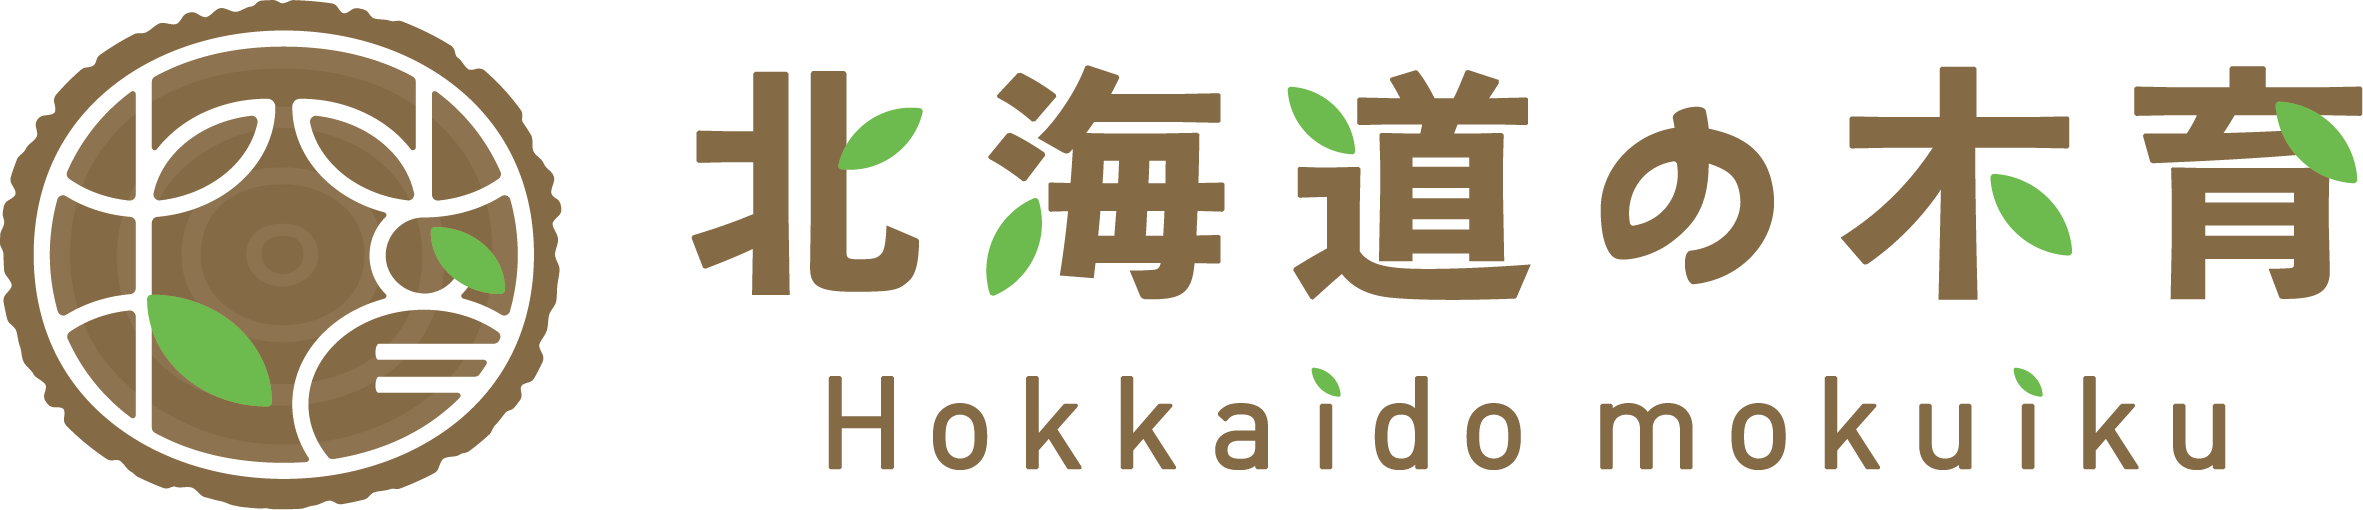 mokuiku_logo_6.png